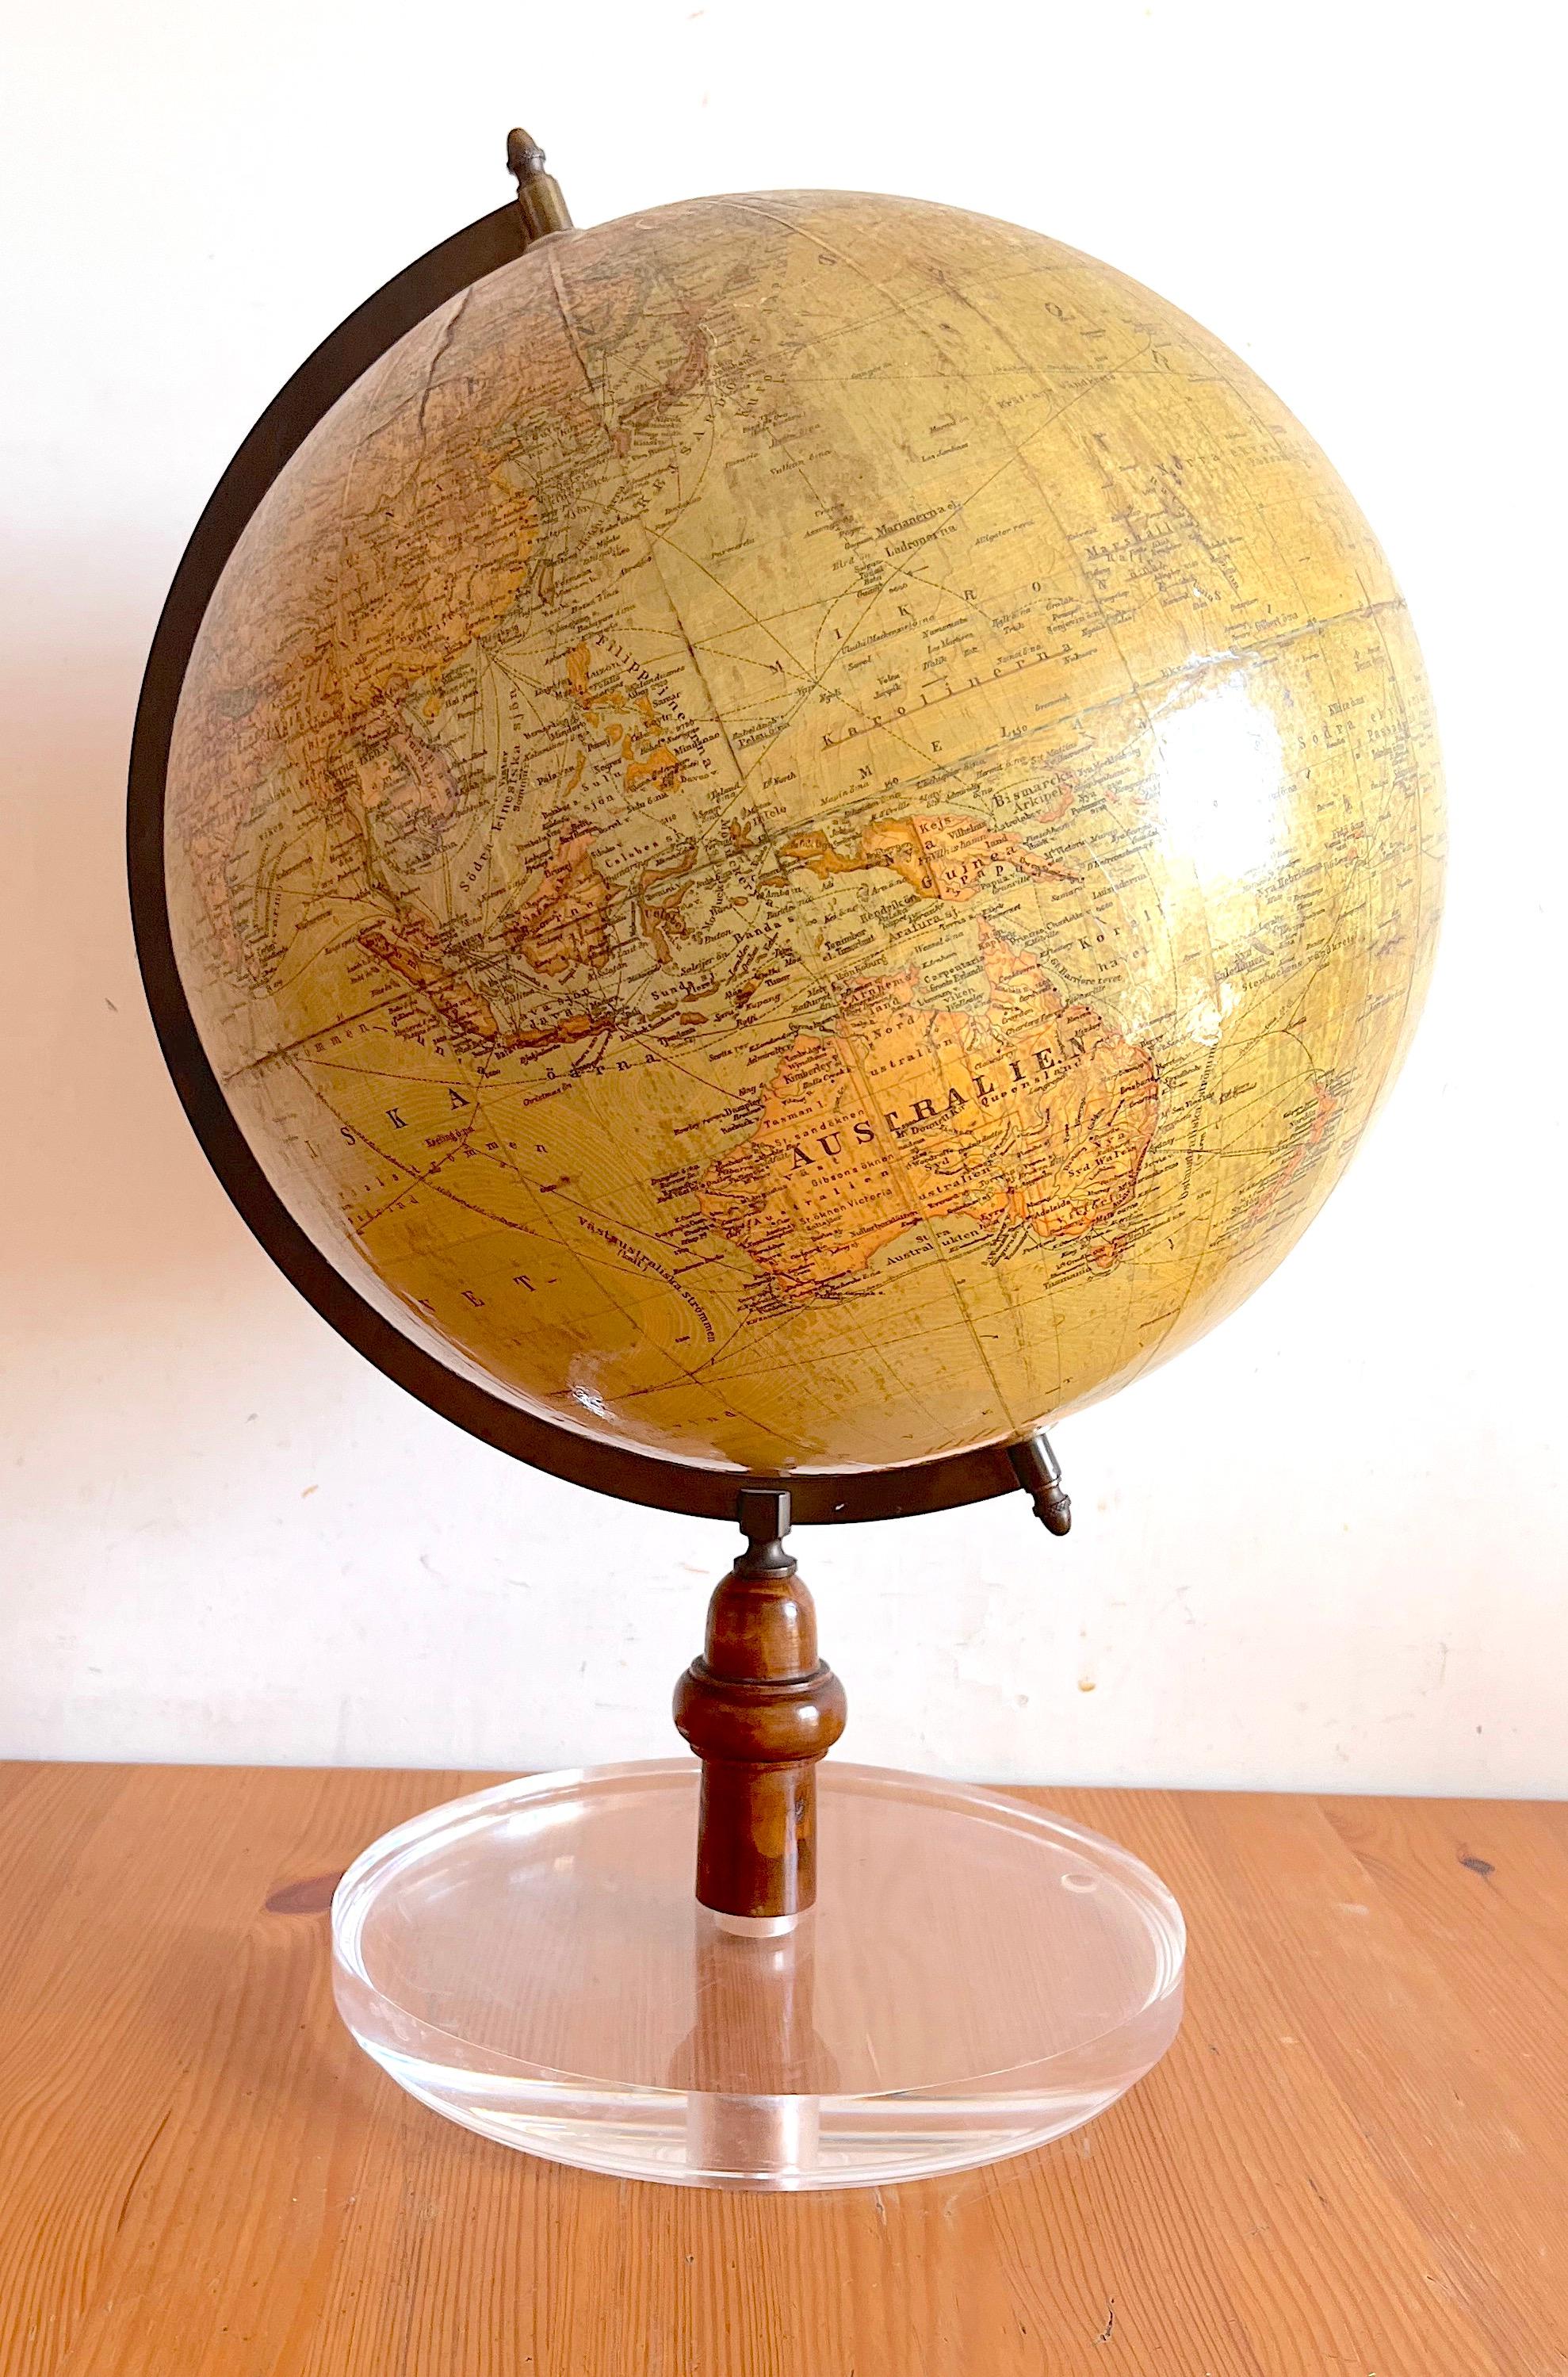 Globe de l'école allemande vers 1933. 
32 cm de diamètre  
Une apparence élégante avec une belle palette de couleurs. Très bien conservée
Ce globe a été retravaillé par le cartographe Dr. H. Fisscher
Ce globe a été fabriqué par Wagner & Debes de